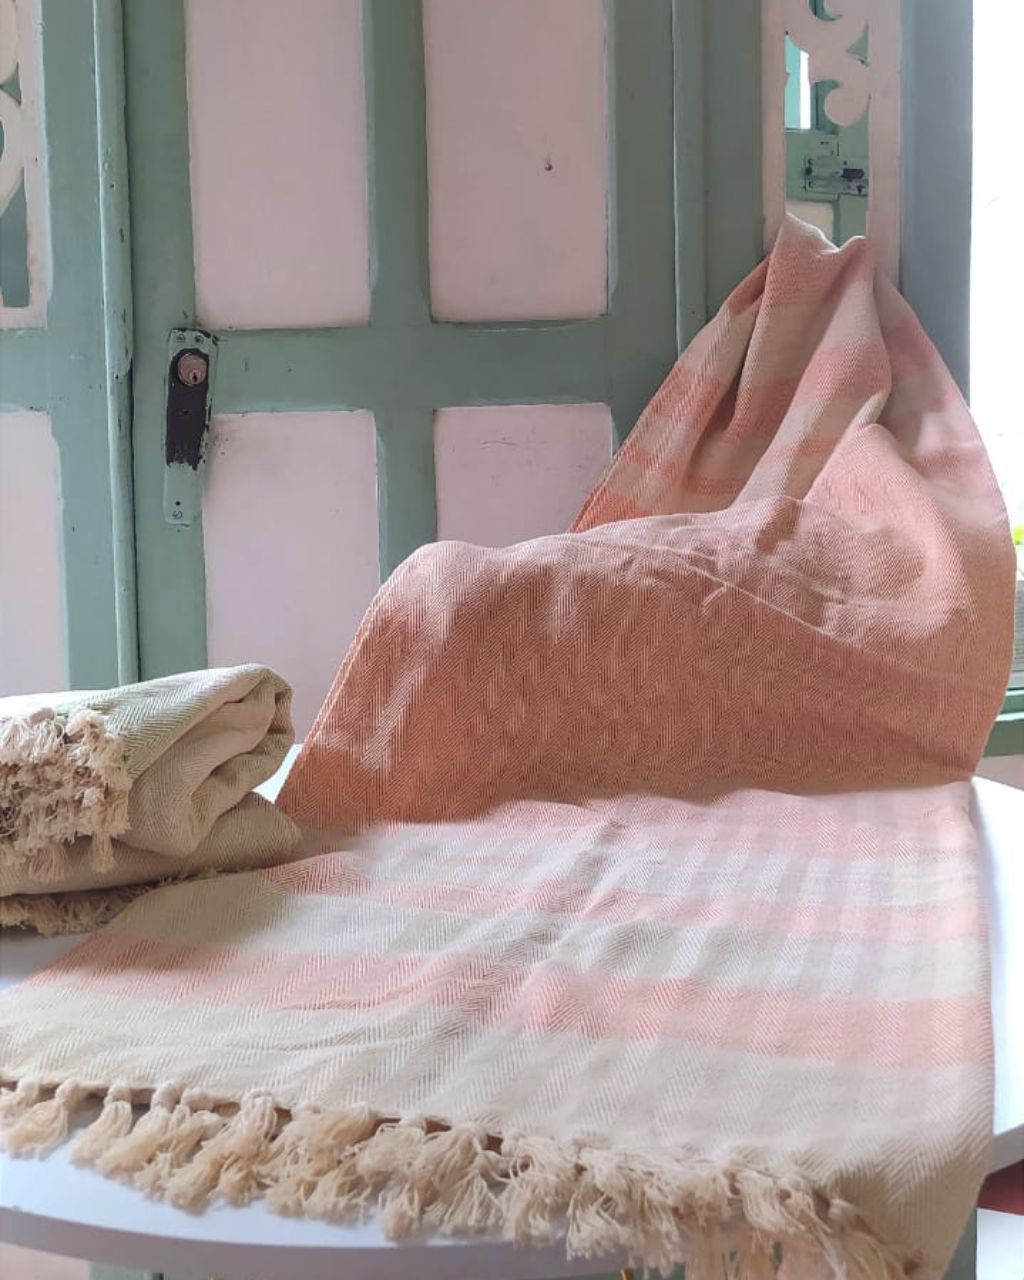 Mantas de algodón hechos por artesanos de la Sierra Nevada de Santa Marta, en color natural y naranja.